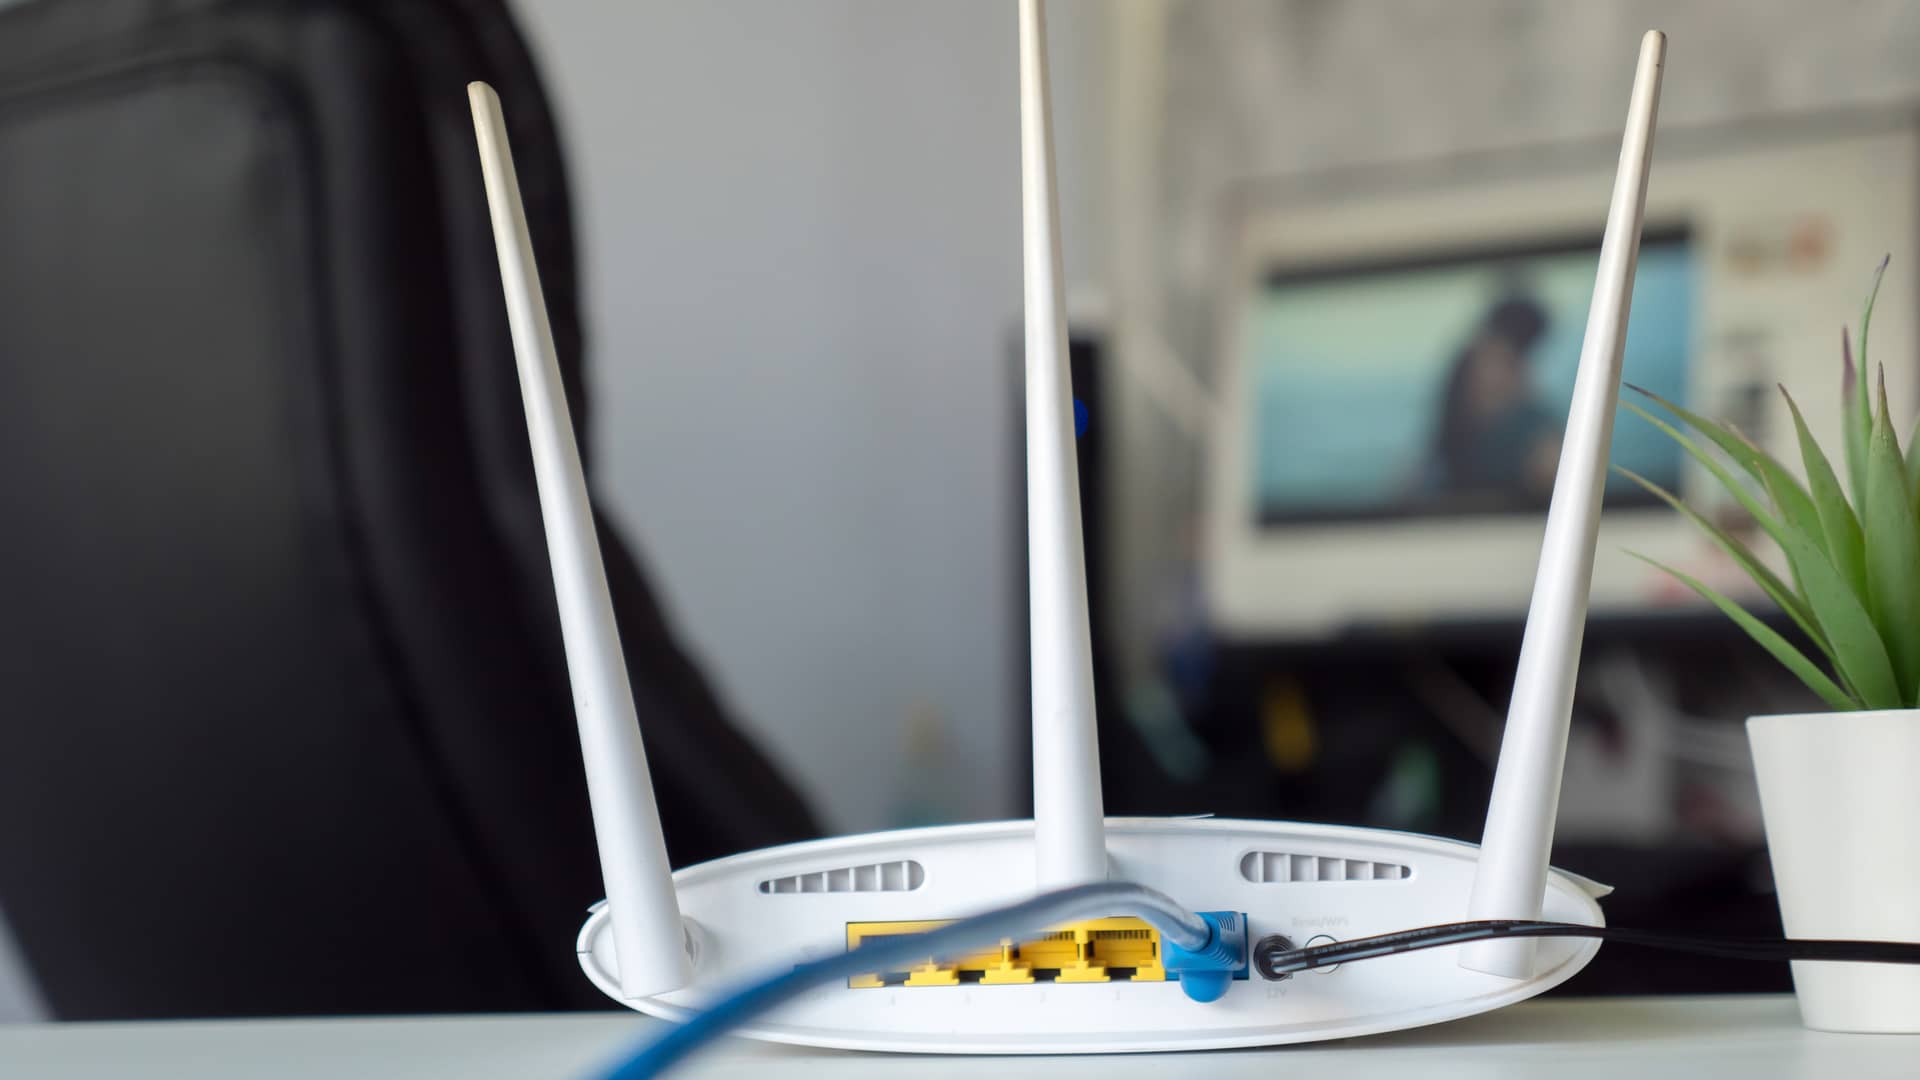 Router visto desde su parte trasera y sus conexiones representa fibra indirecta de pepephone